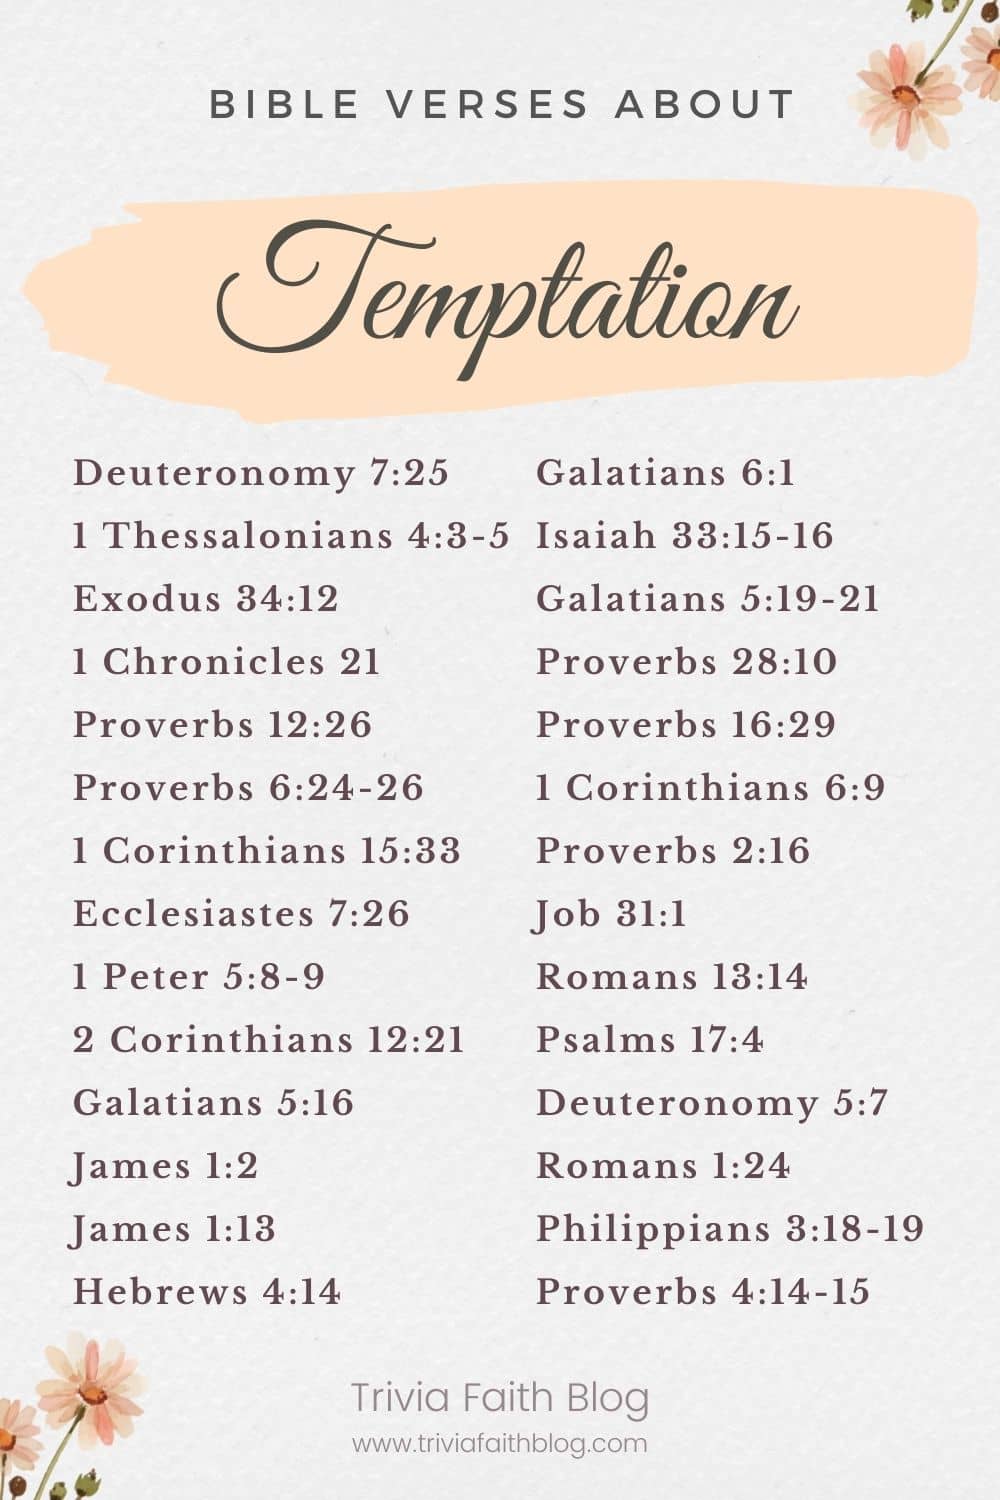 Bible verses about temptation